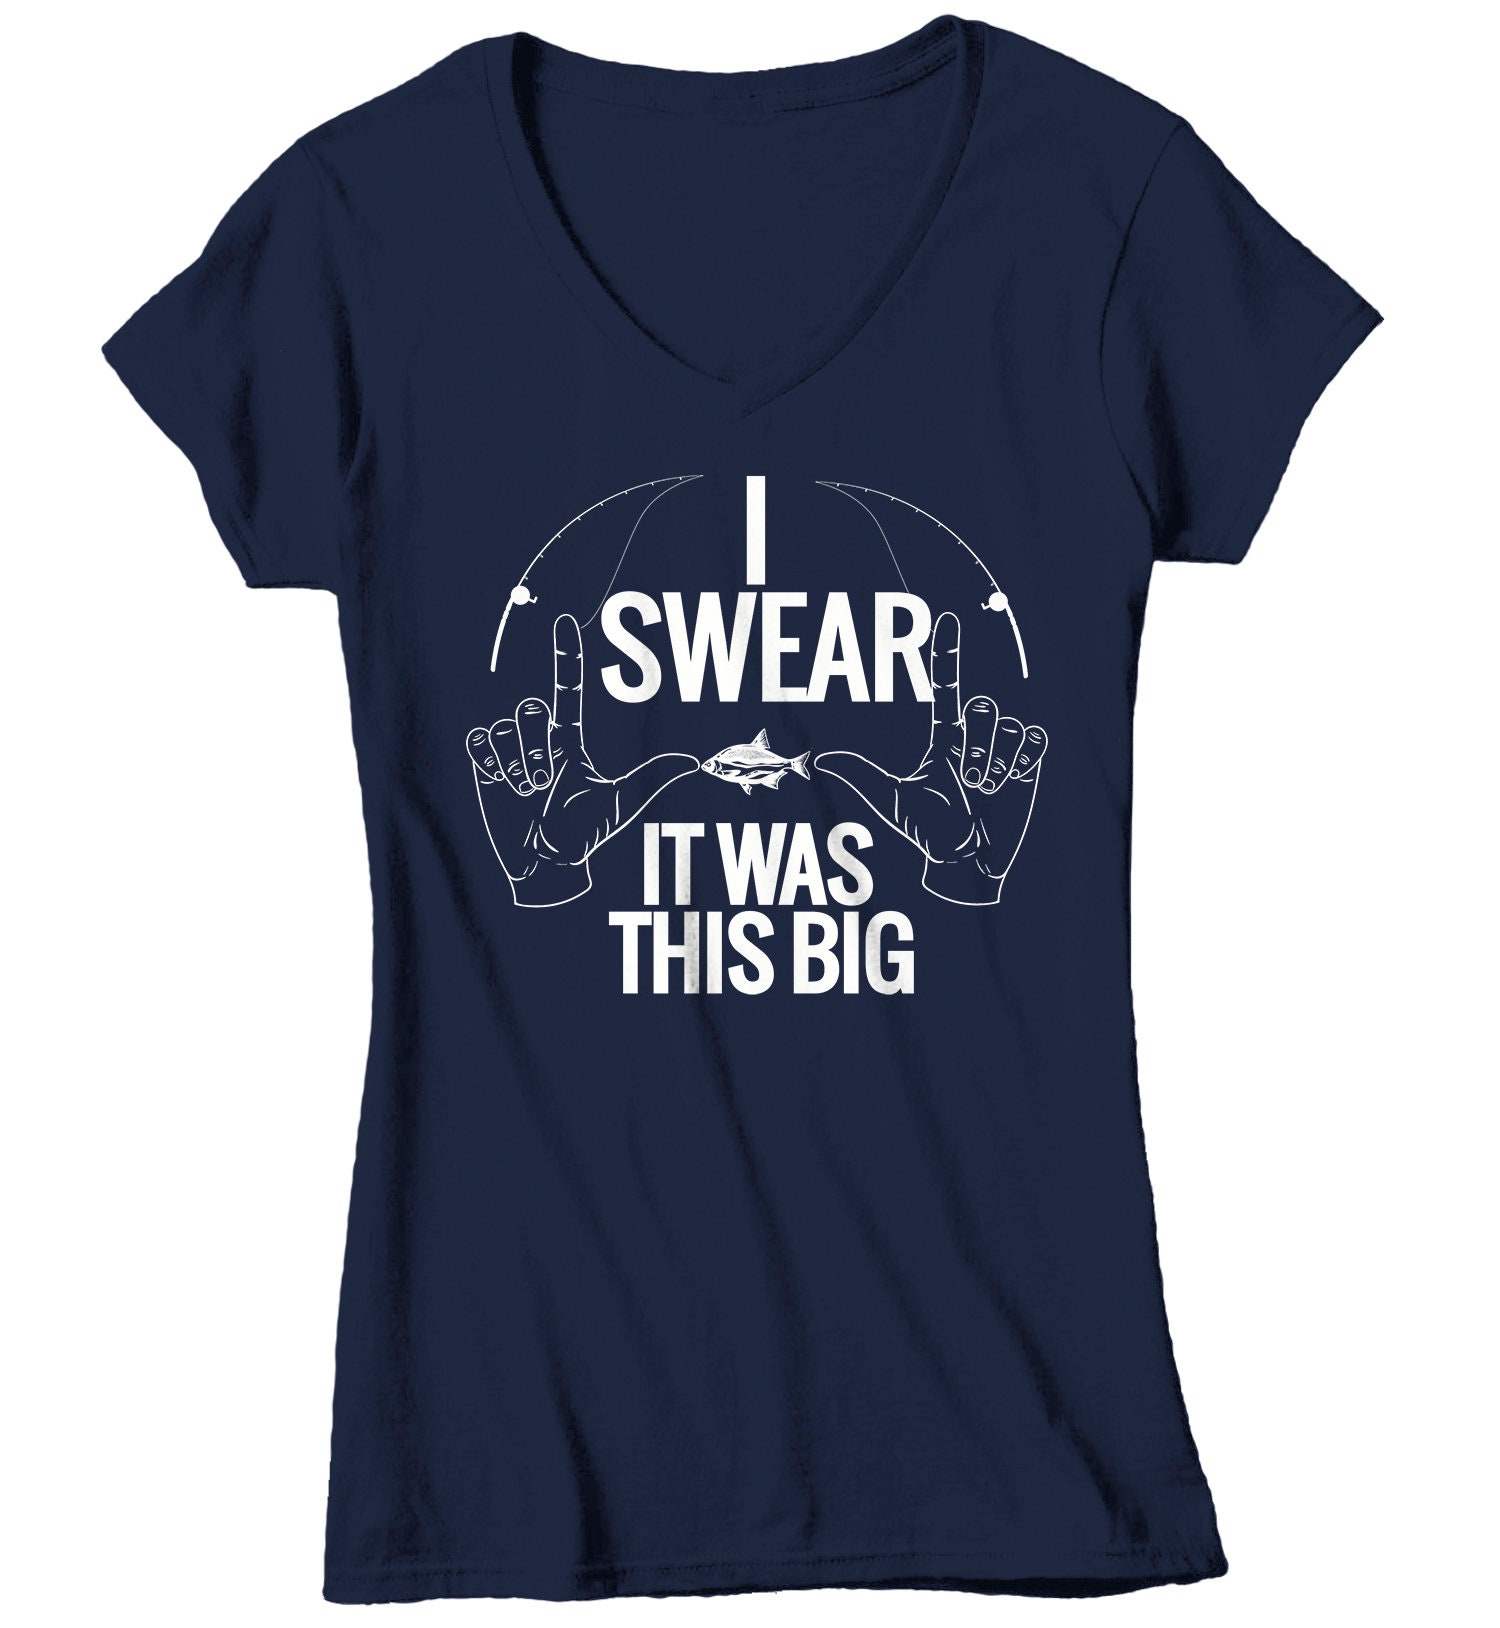 Fishing Joke' Women's Plus Size T-Shirt